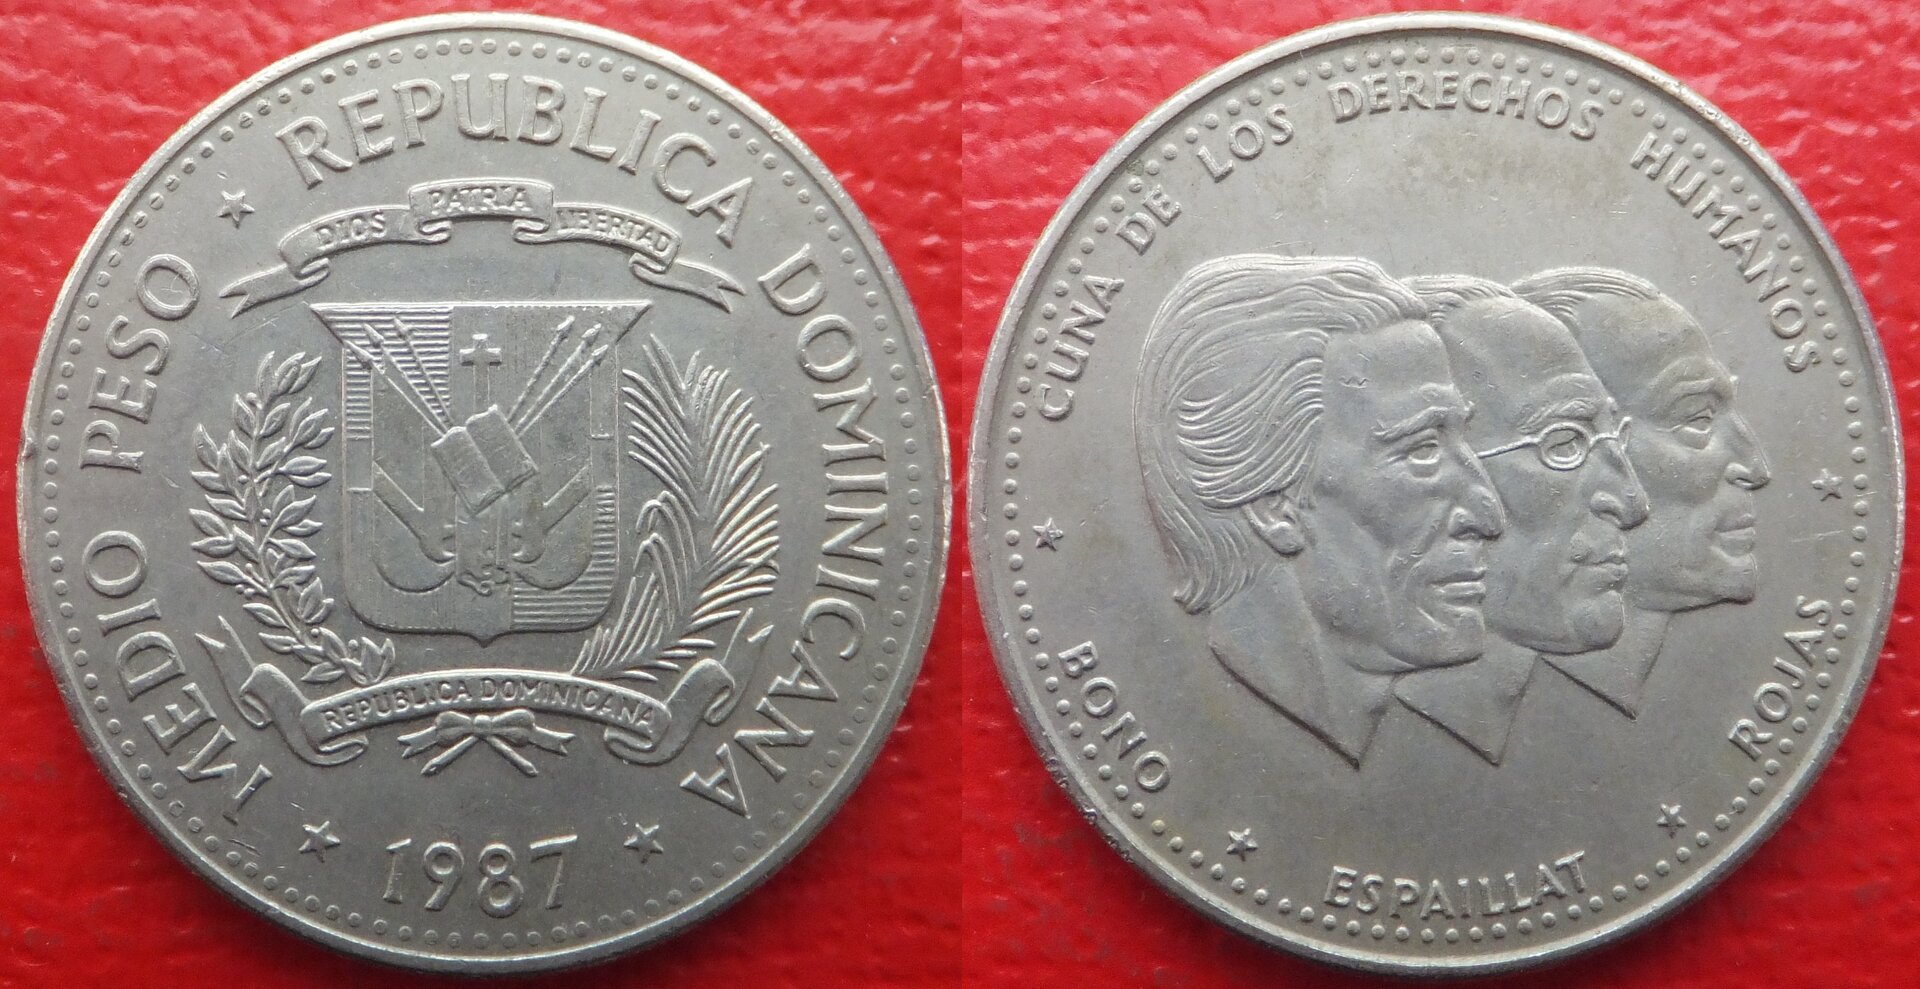 Dominican Republic ½ peso 1987 (3).jpg